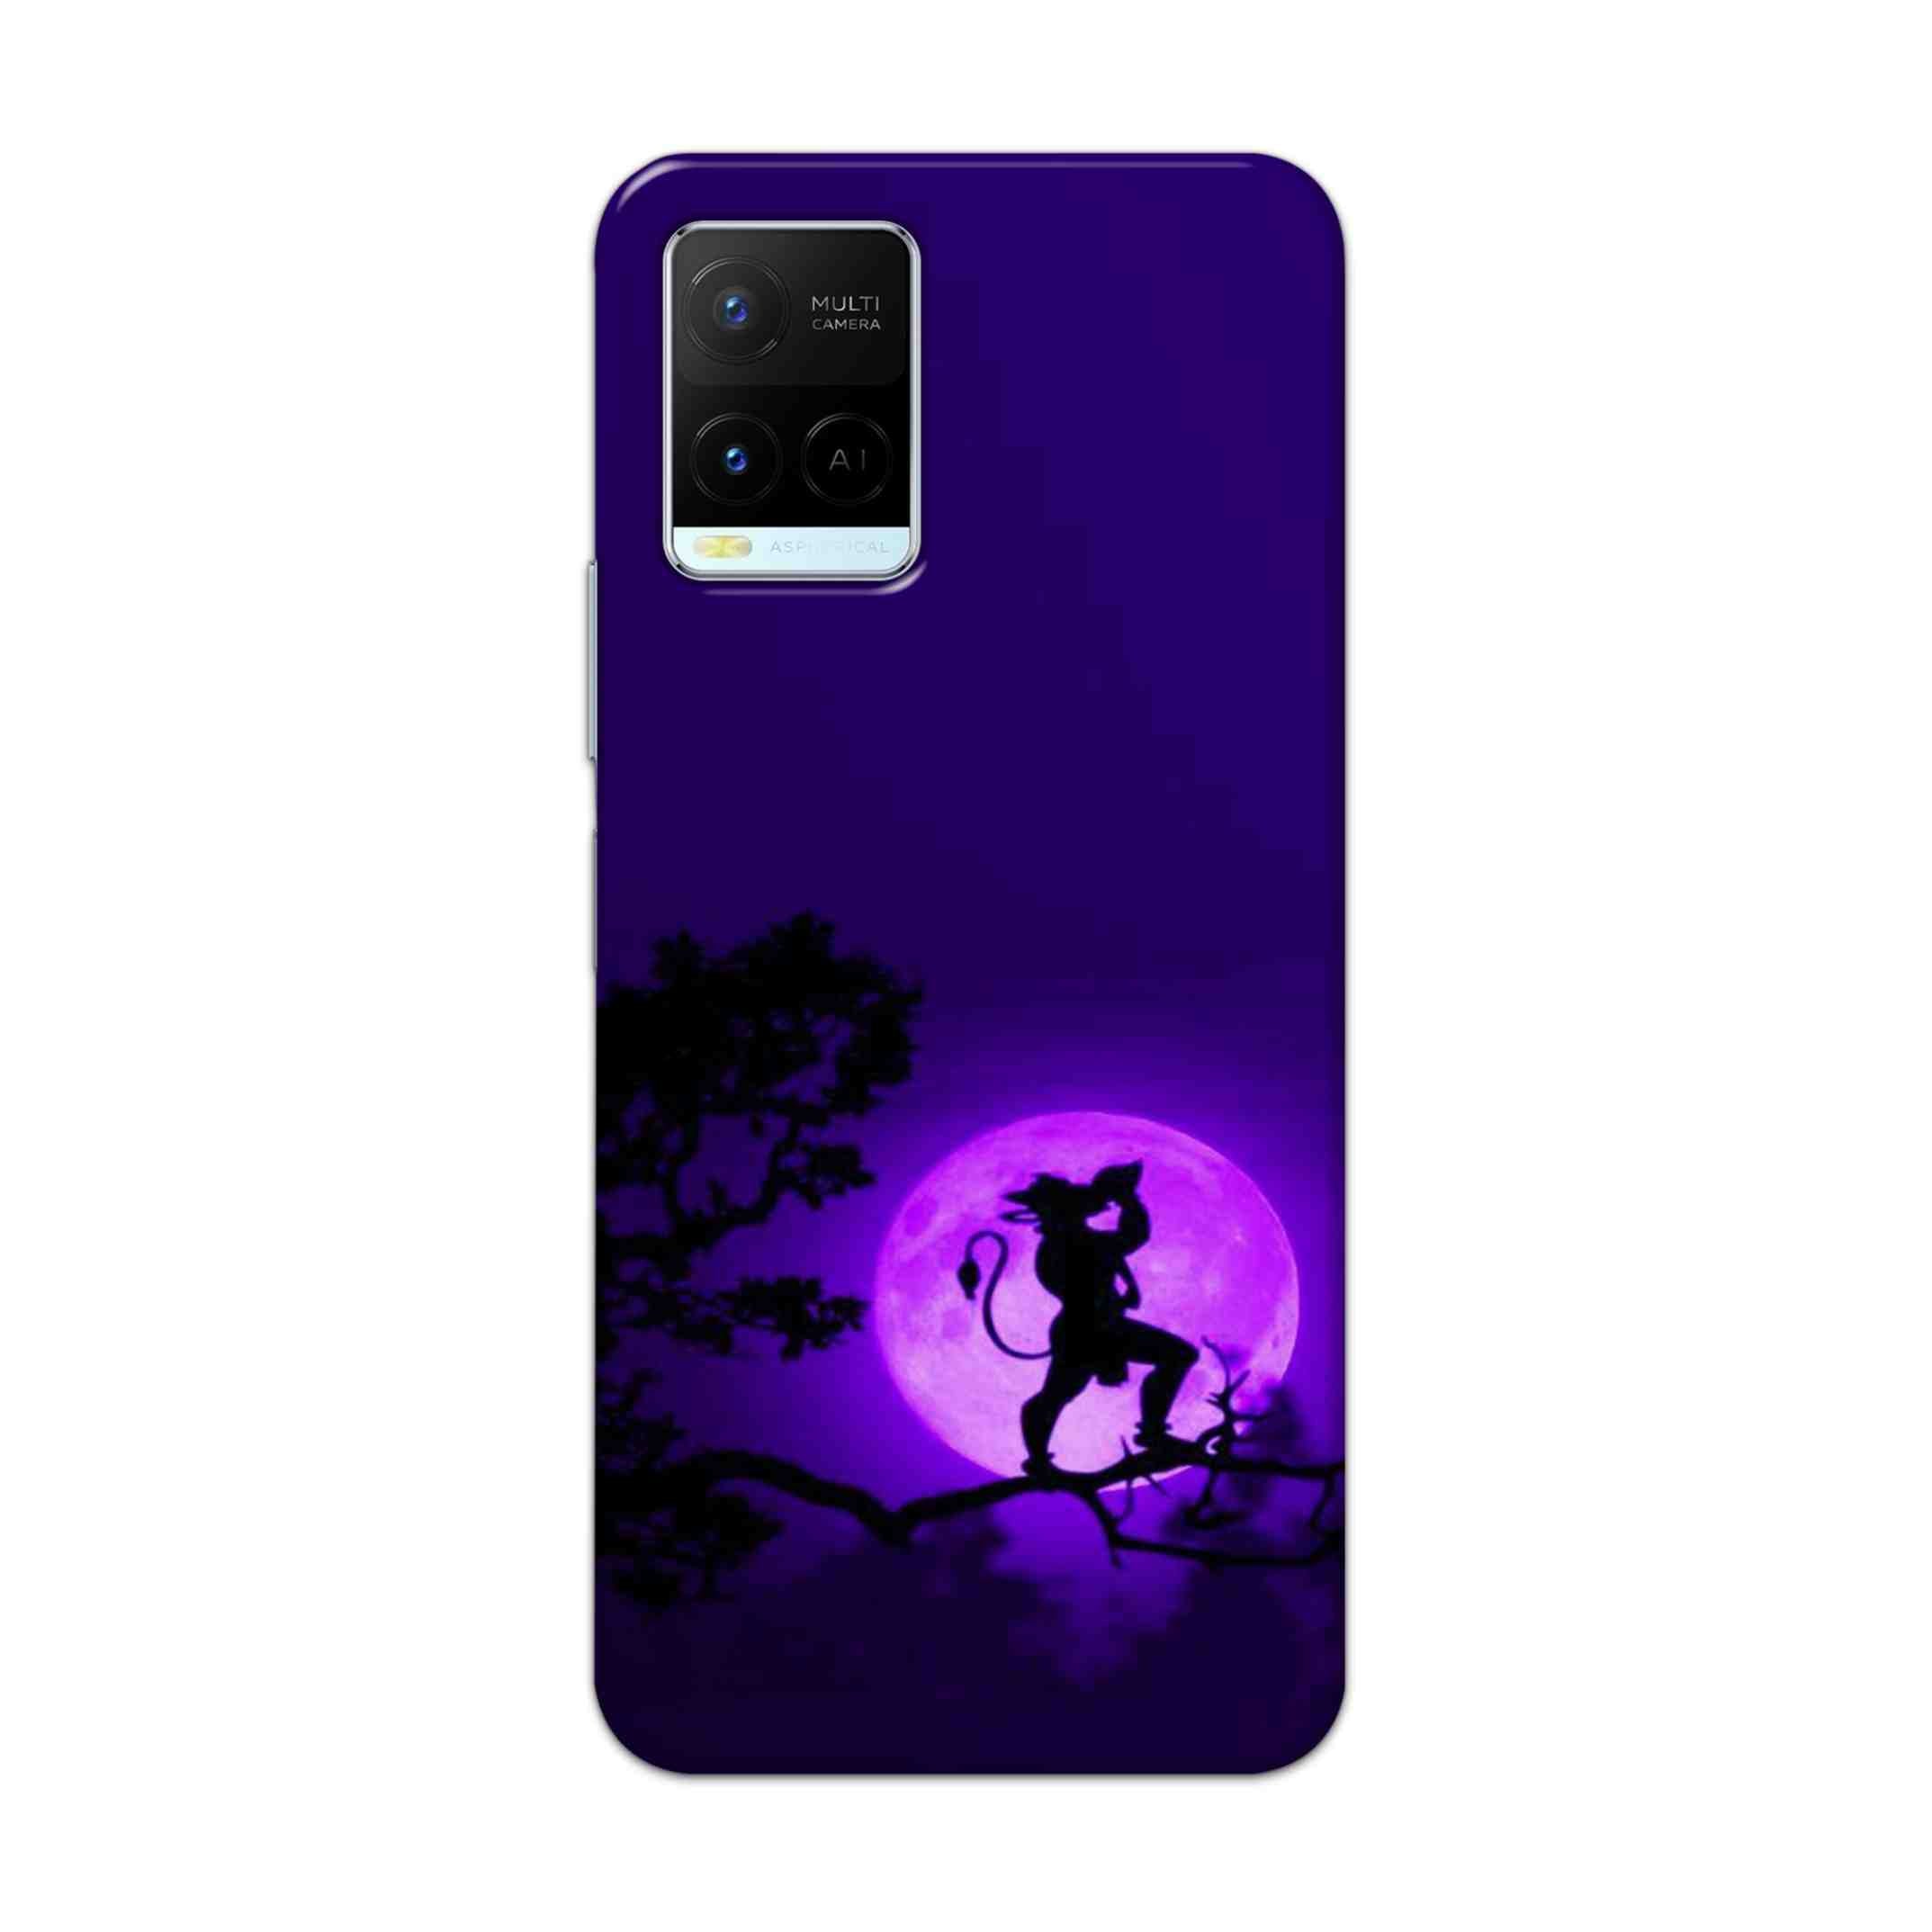 Buy Hanuman Hard Back Mobile Phone Case Cover For Vivo Y21 2021 Online